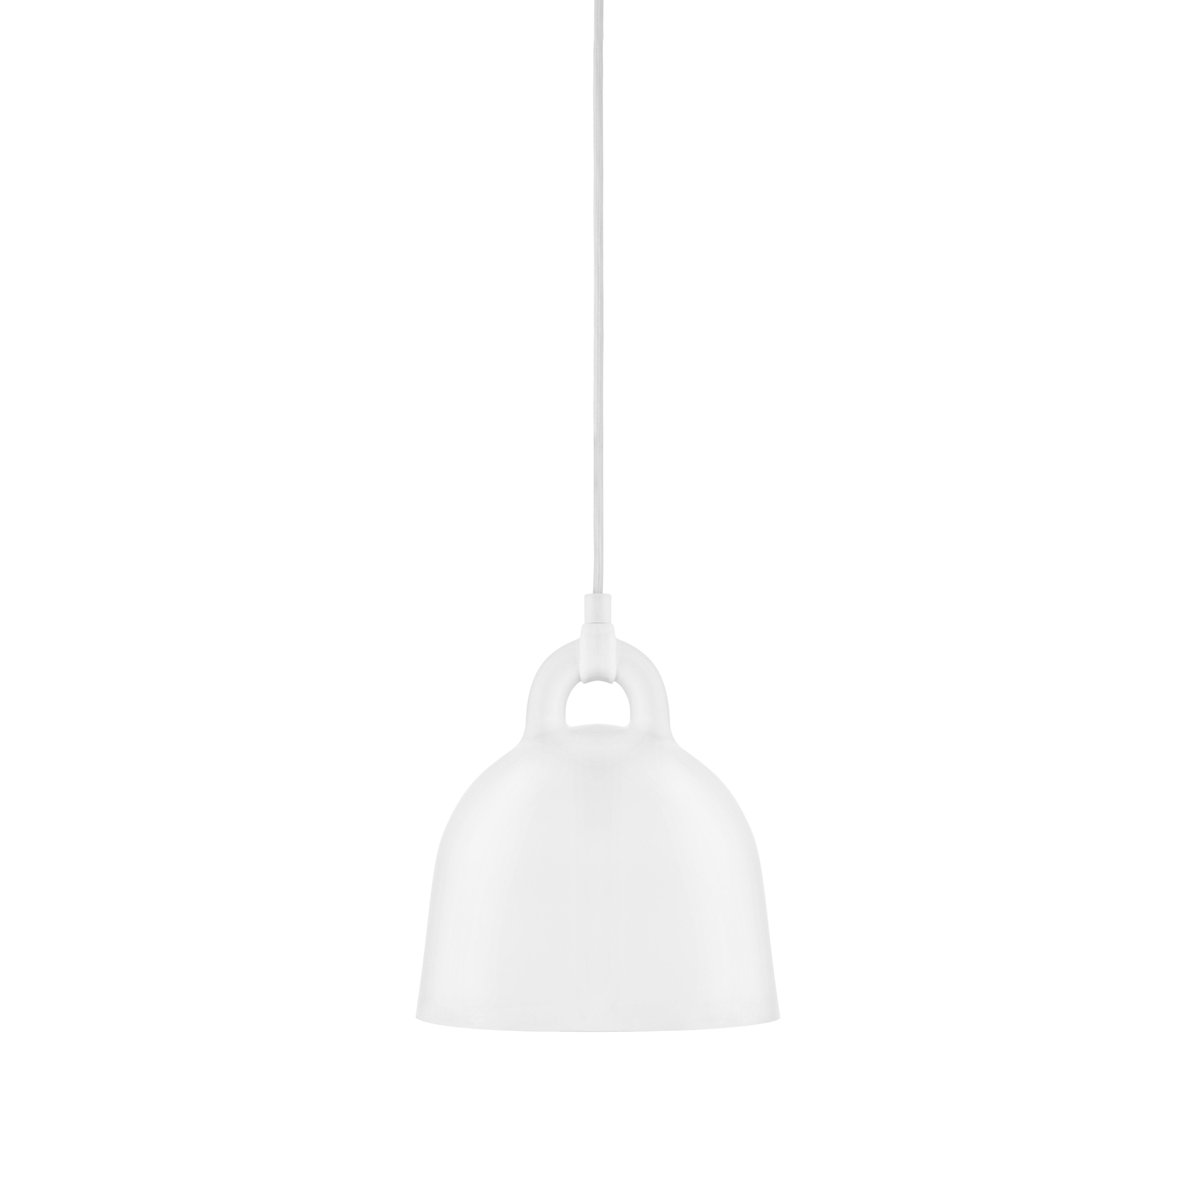 Normann Copenhagen Bell lampe hvid X-small